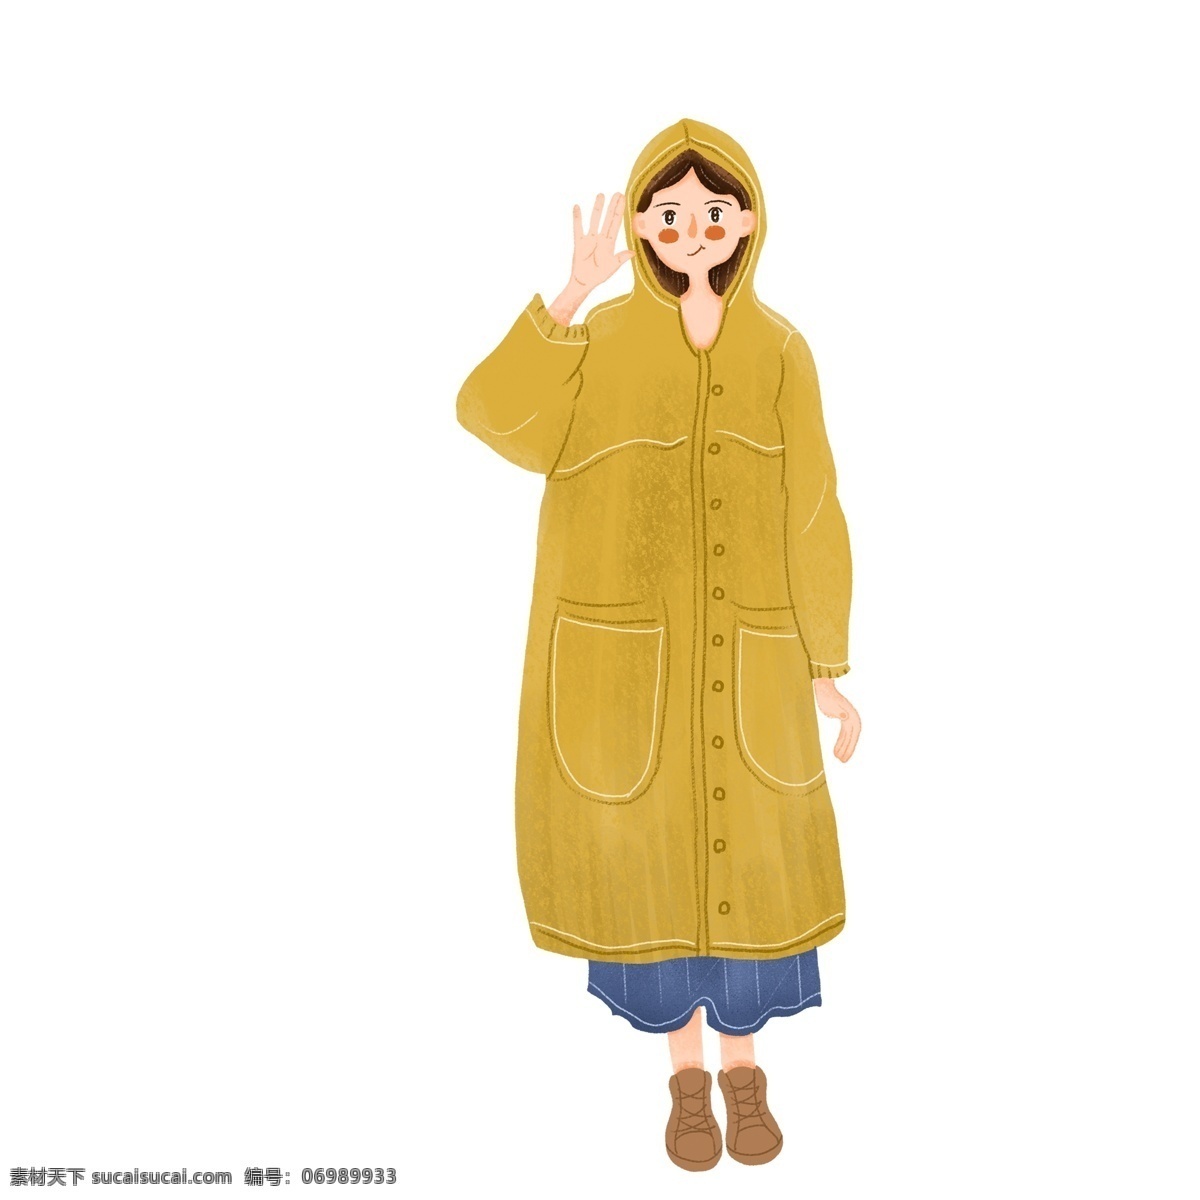 卡通 可爱 穿着 雨衣 女孩 插画 人物 少女